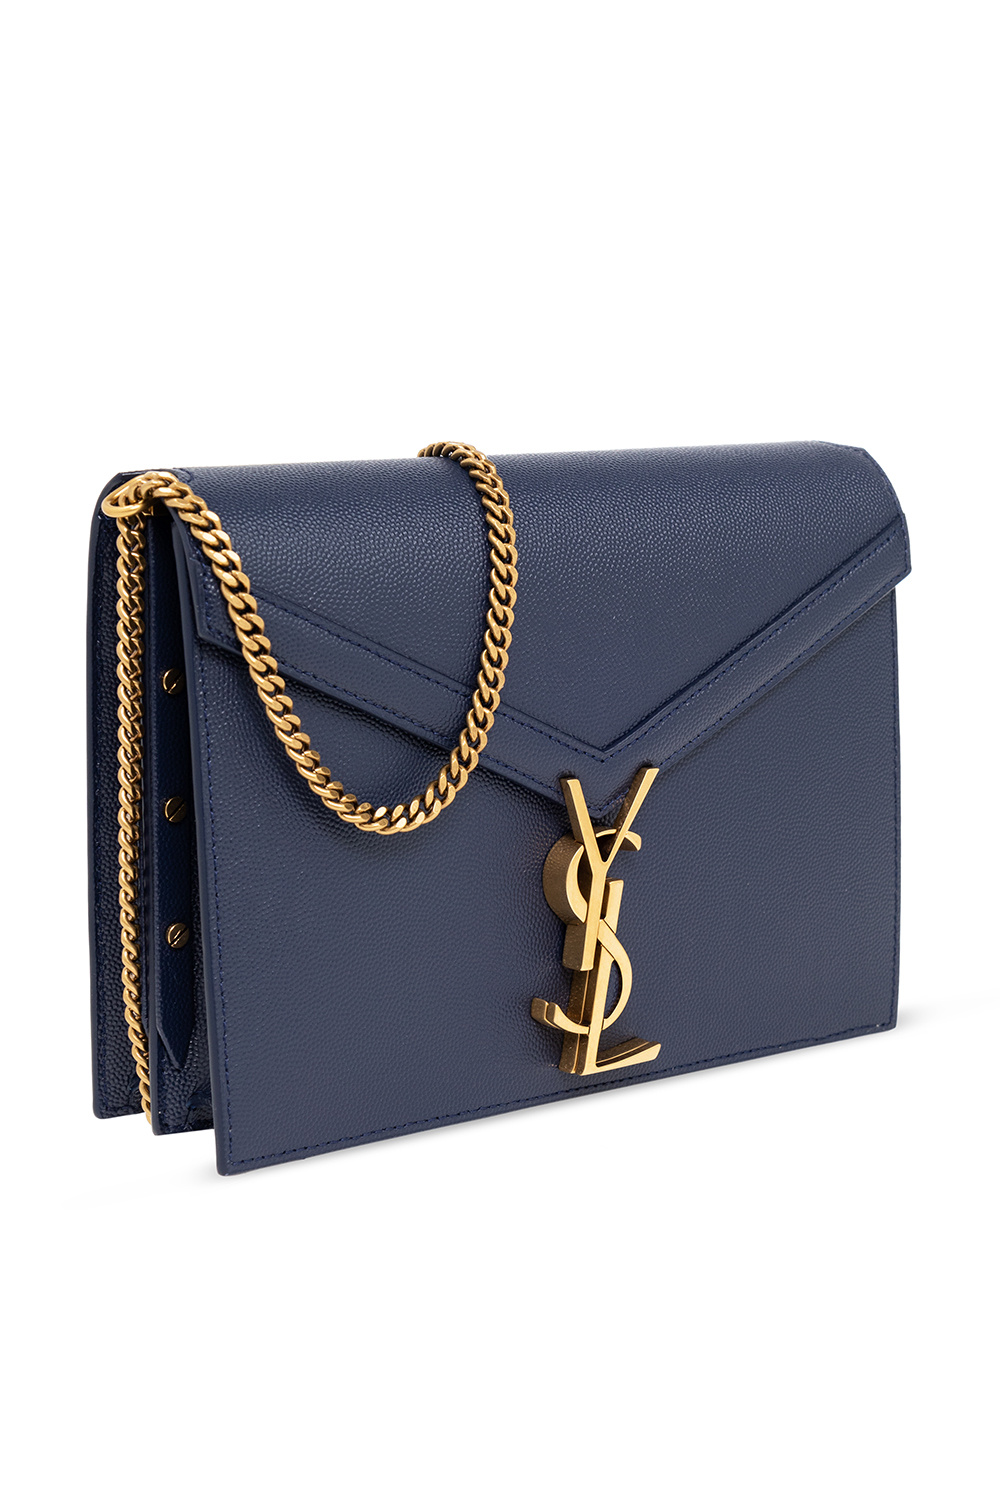 Saint Laurent ‘Cassandra Medium’ shoulder bag